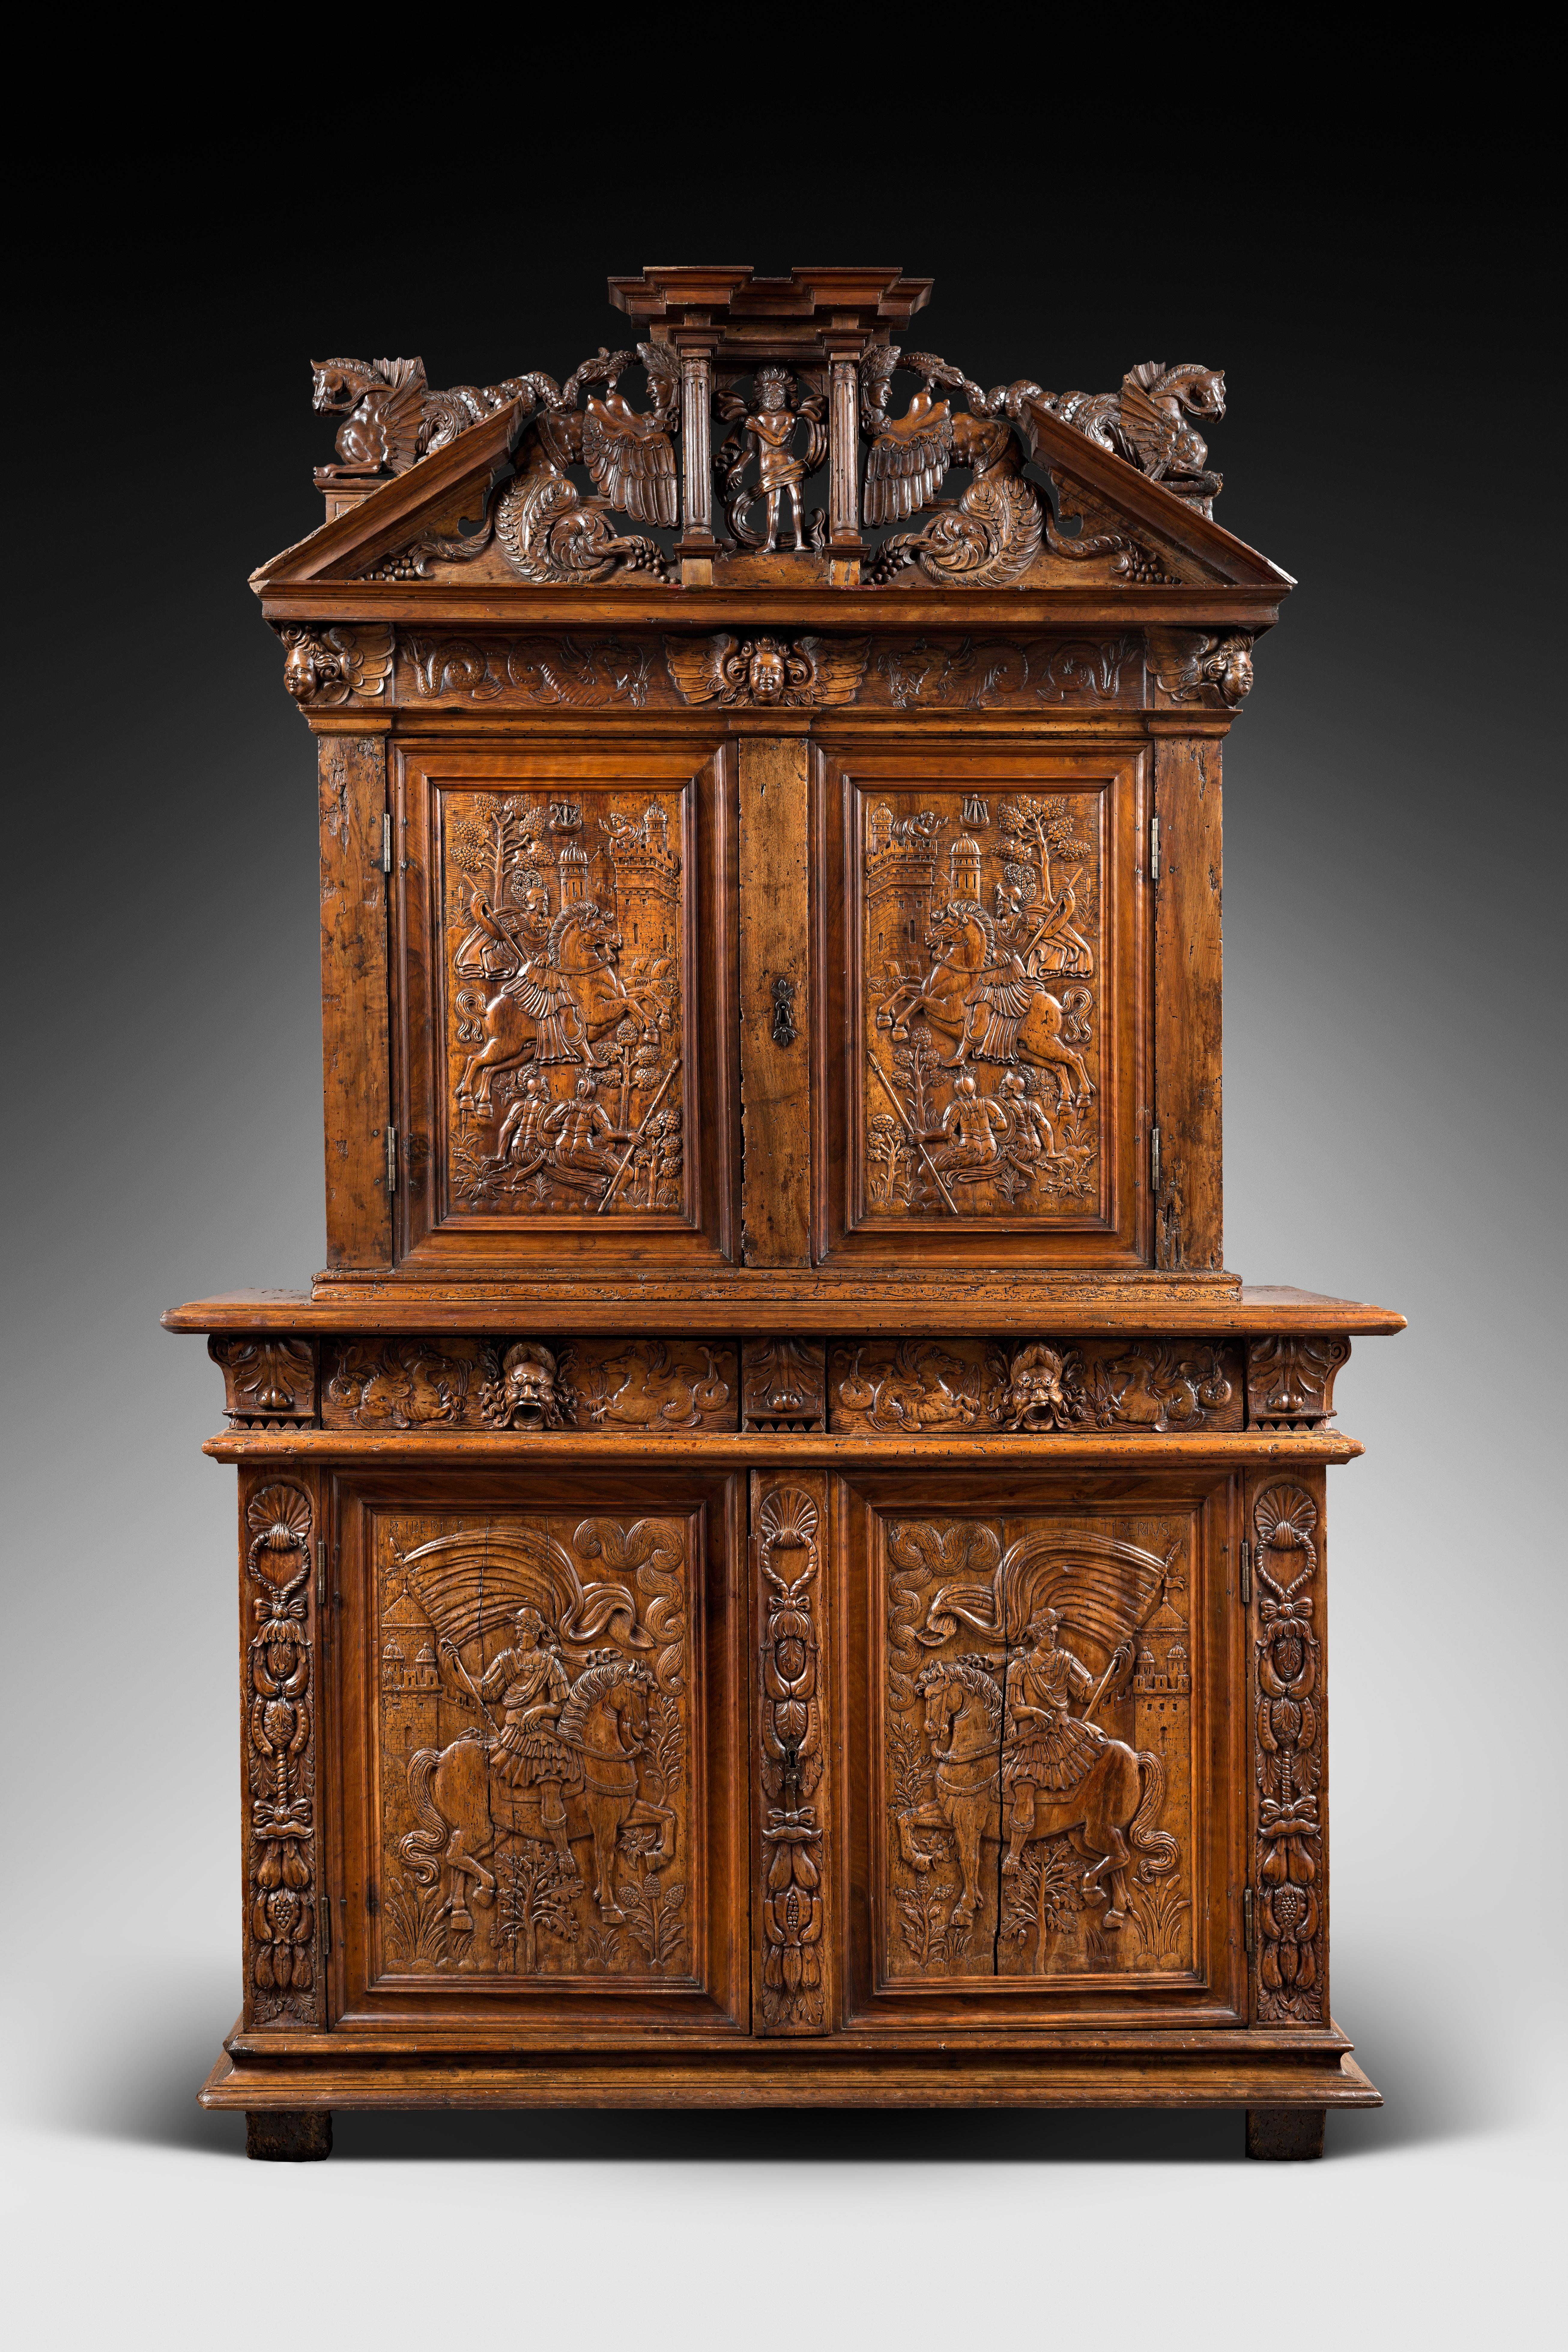 Collectional Jean Thuile 


Vers le milieu du XVIe siècle, le mobilier français évolue dans sa conception et son ornementation. Le lancement de grands projets architecturaux - comme le château de Fontainebleau - donne un nouvel élan aux artistes.